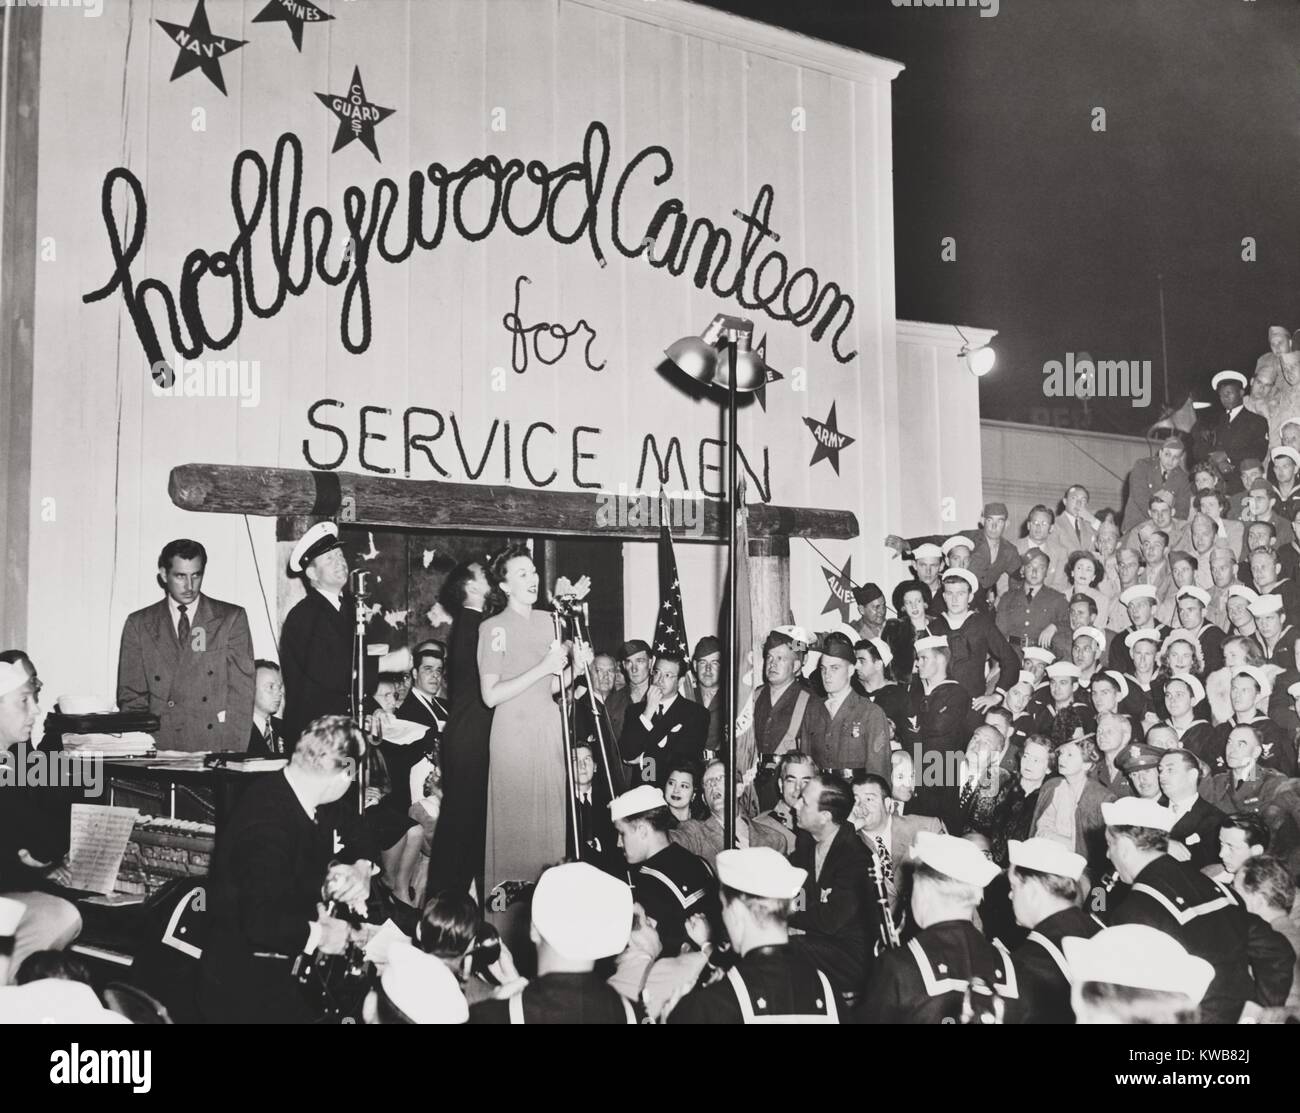 Singer Ginny Sims effectue, pour la dédicace de l'Hollywood Canteen. L'ouverture a été suivie par des milliers de militaires le 4 octobre 1942. La Seconde Guerre mondiale 2. (BSLOC 2014 8 211) Banque D'Images